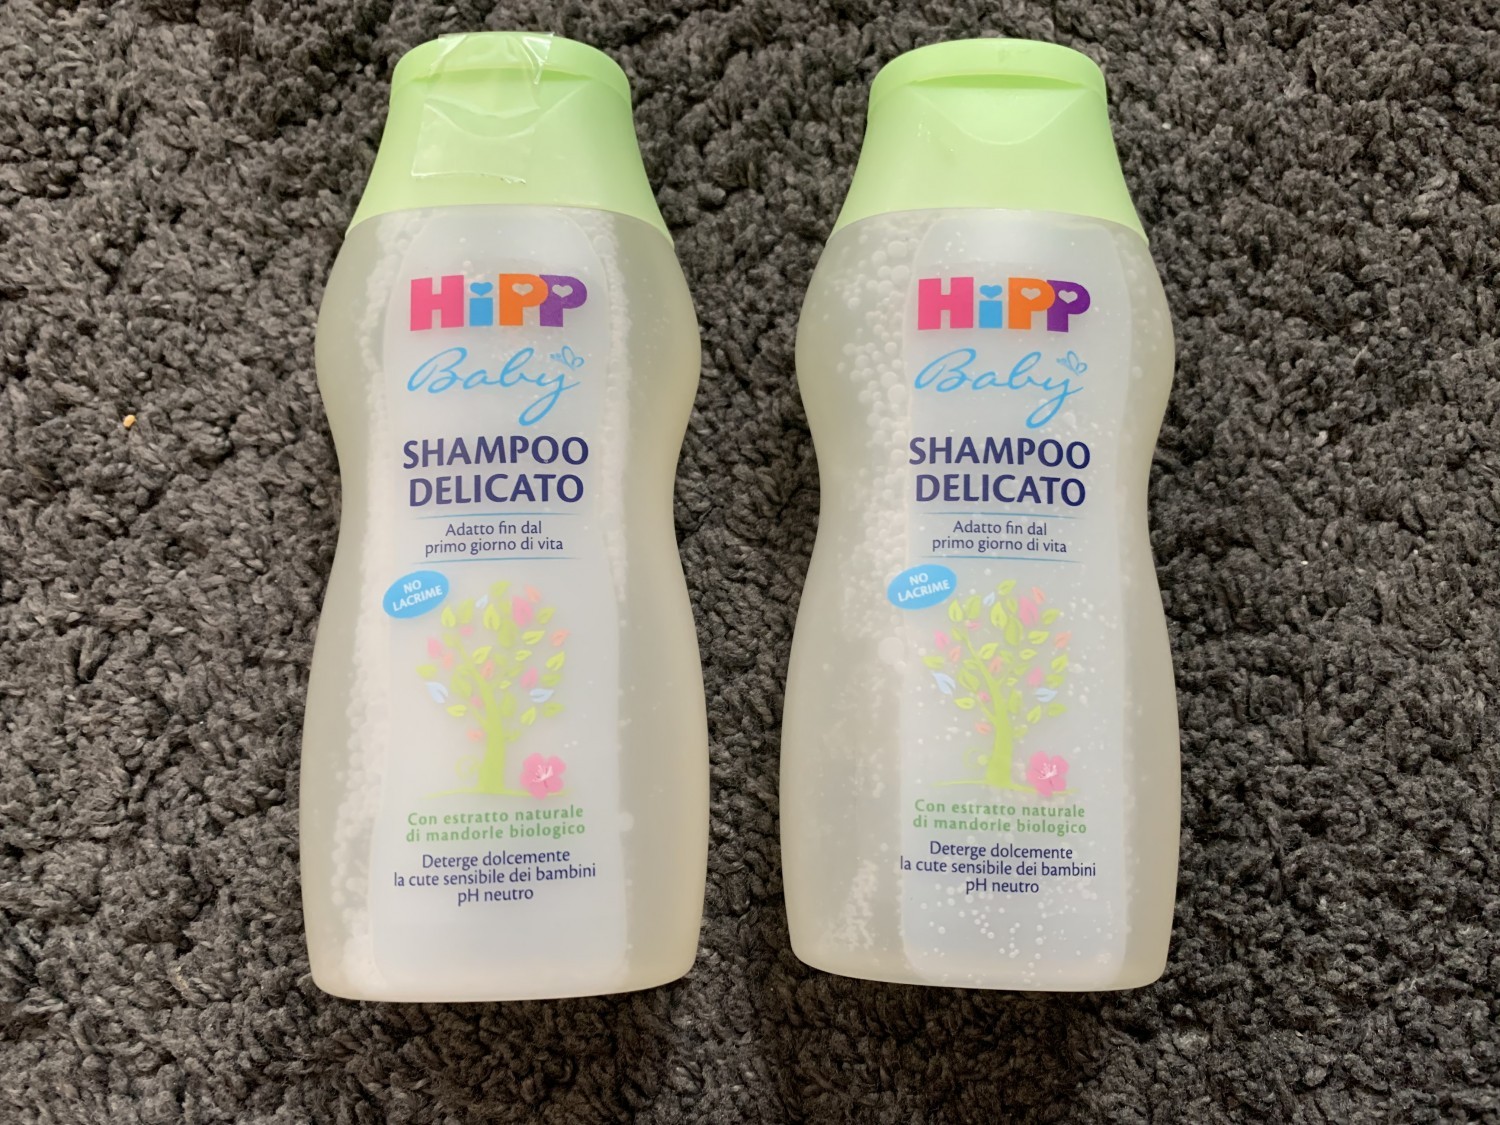 Shampoo delicato